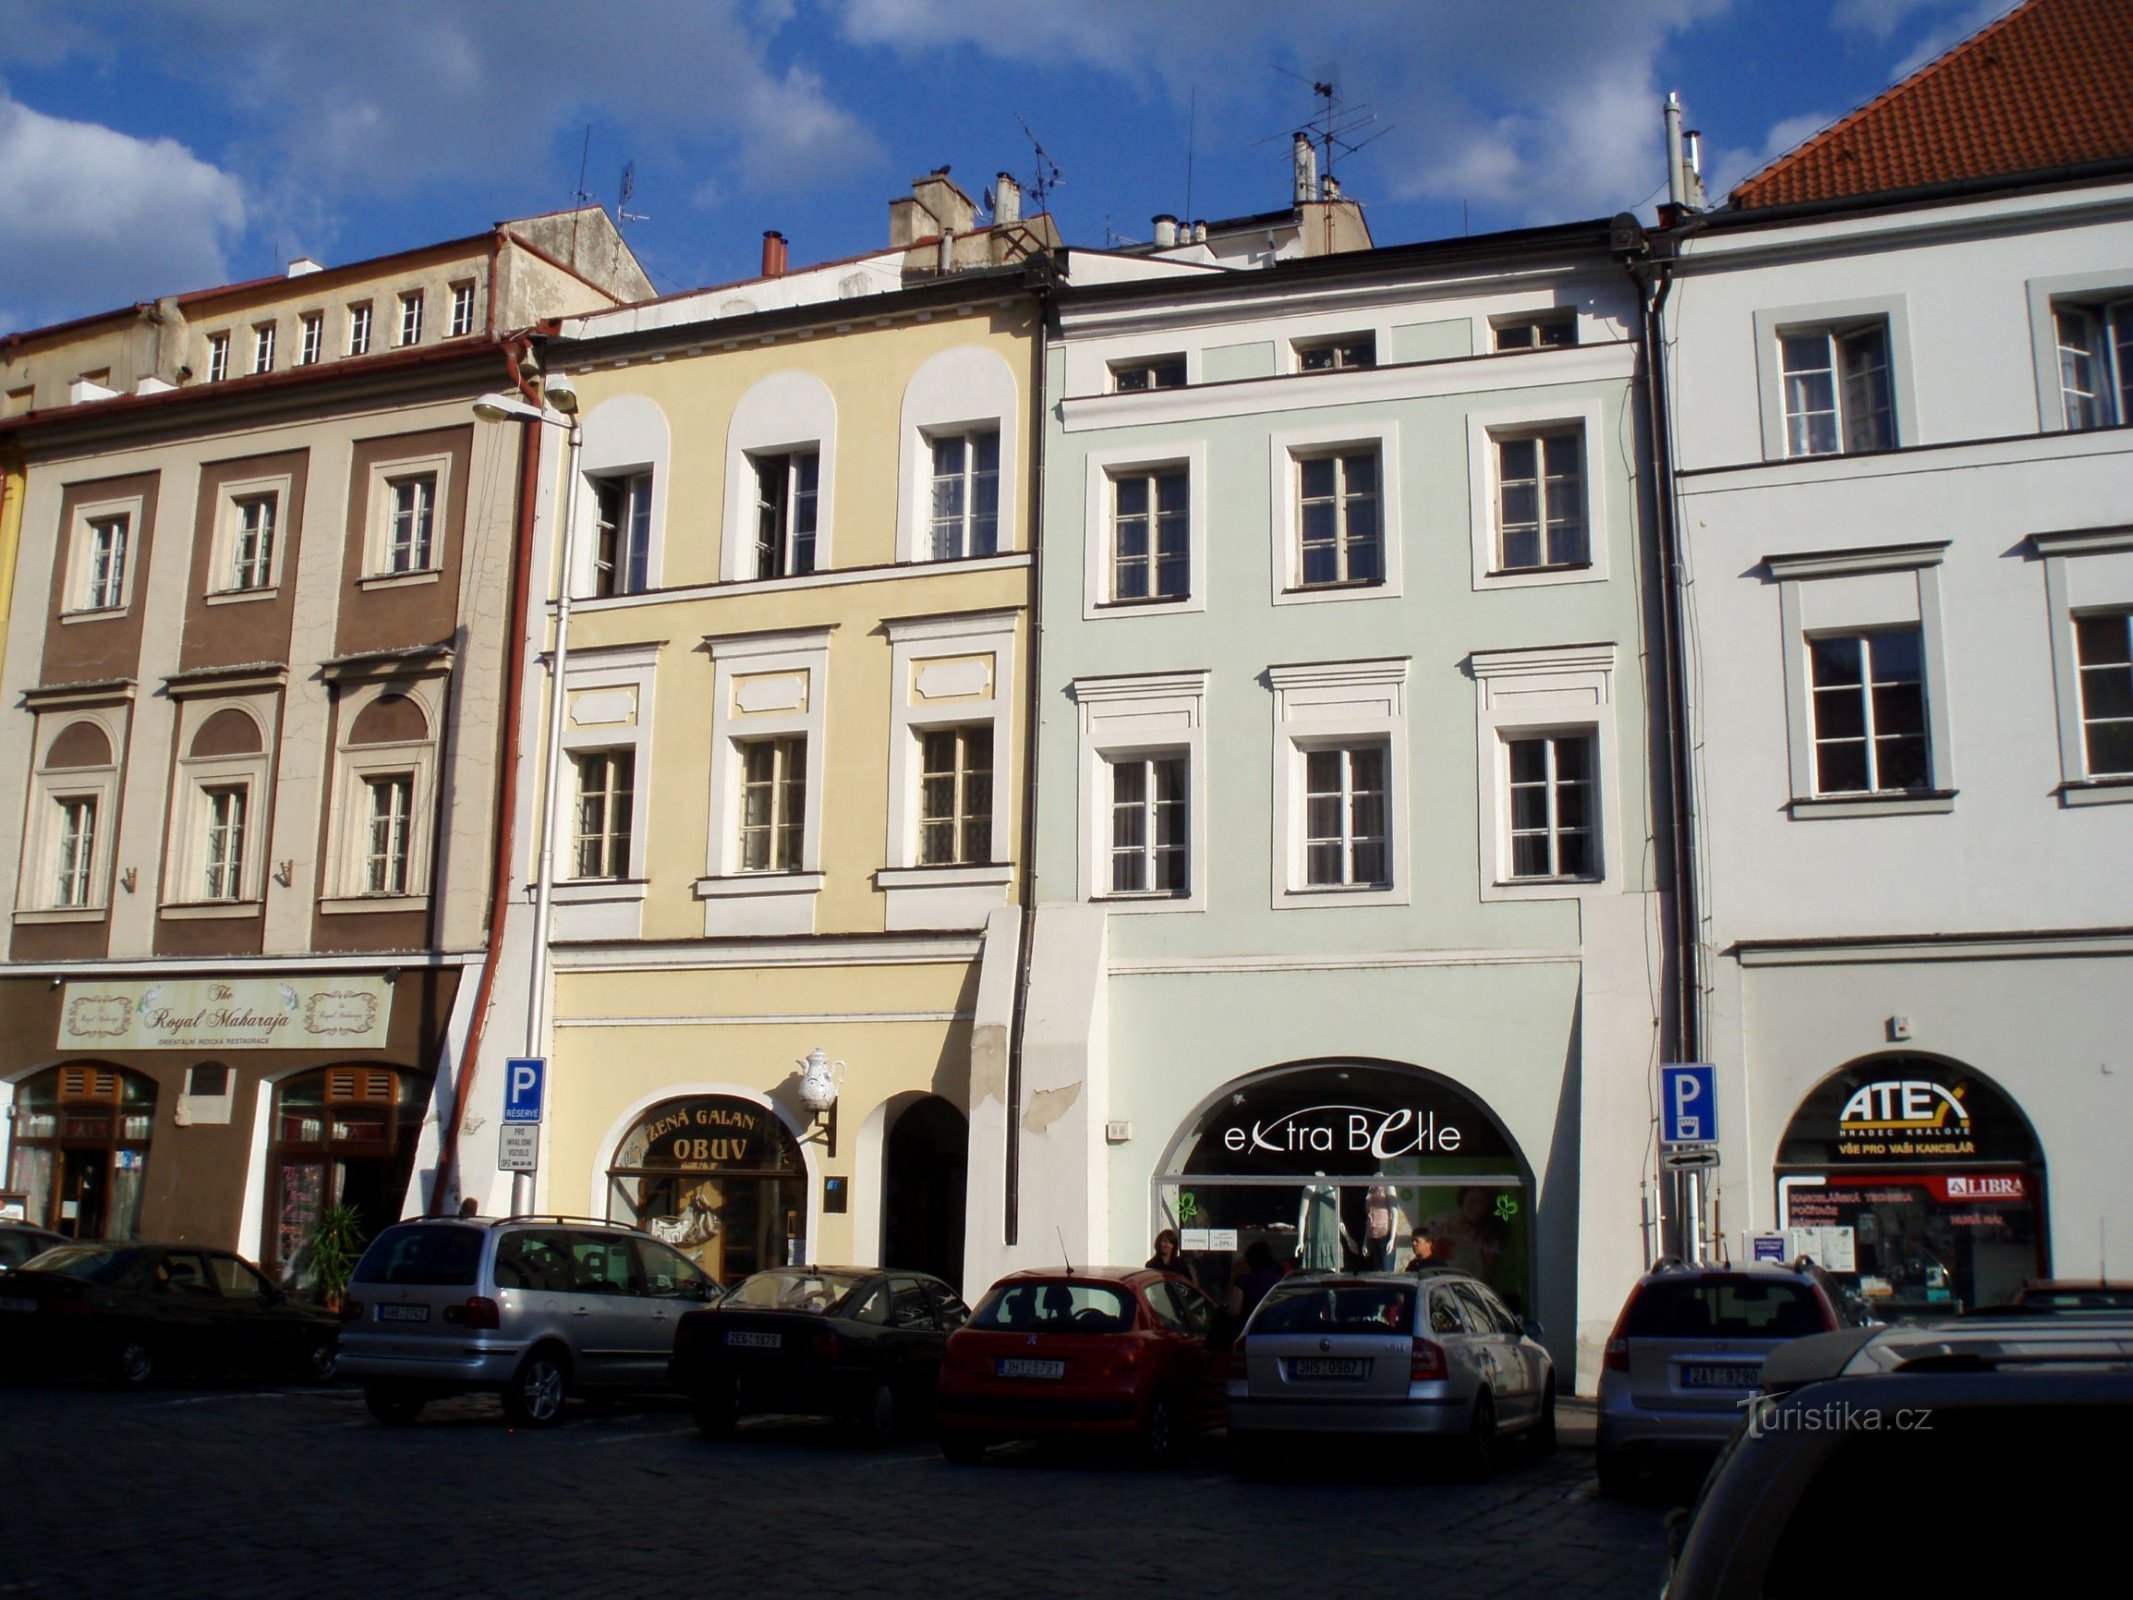 Velké náměstí Nr. 23-24 (Hradec Králové, 25.5.2012)